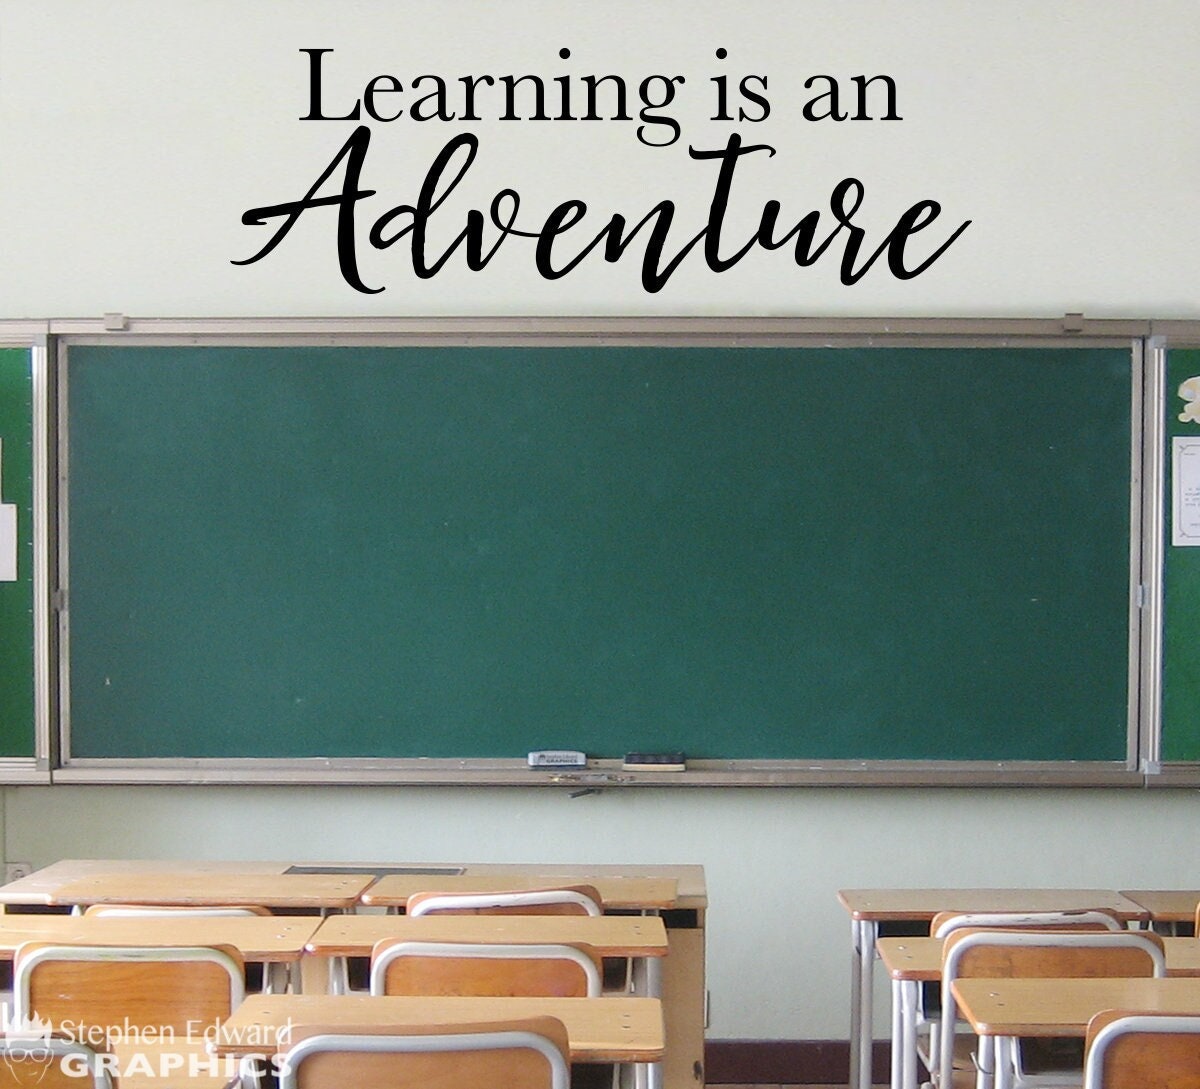 Learning is an Adventure Decal | Teacher Classroom Decor | School Wall Vinyl Sticker